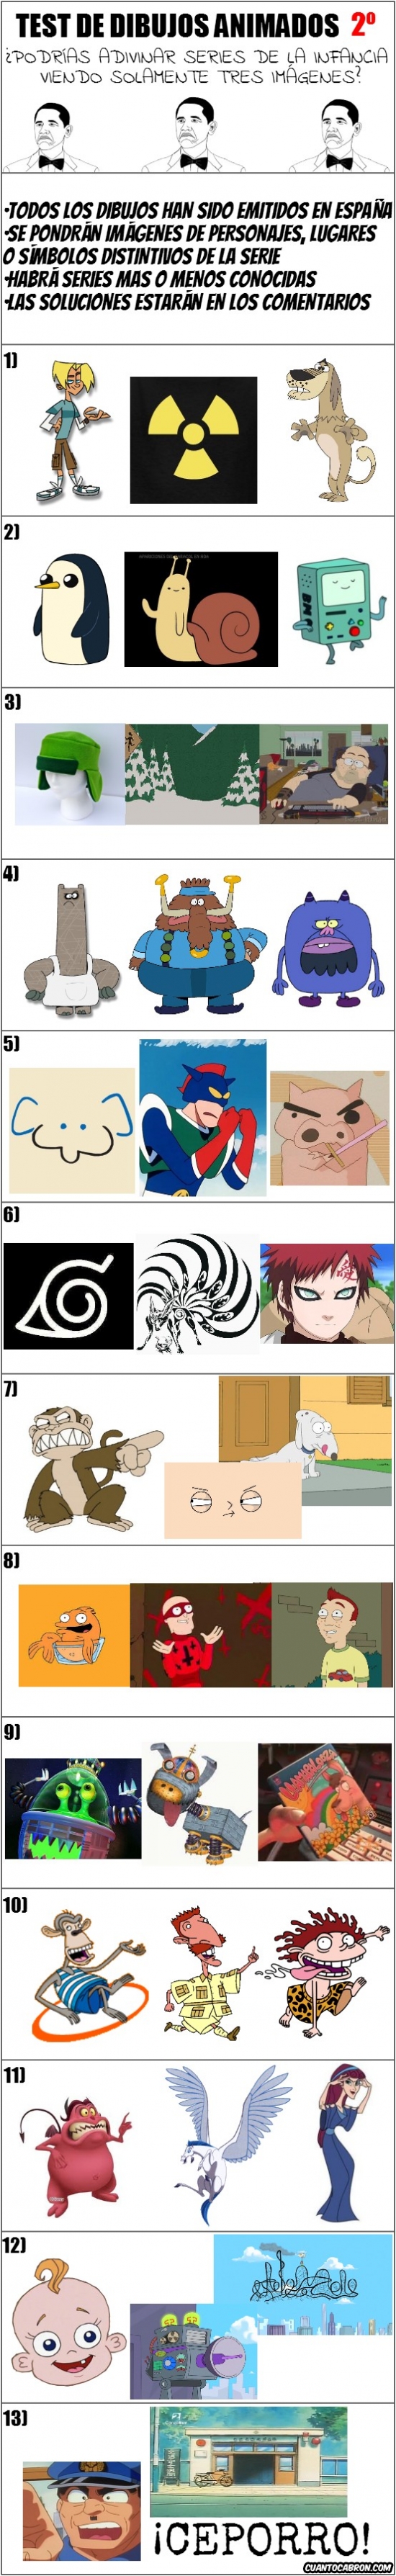 2ª,dibujos animados,infancia,juego,preguntas,quiz,test